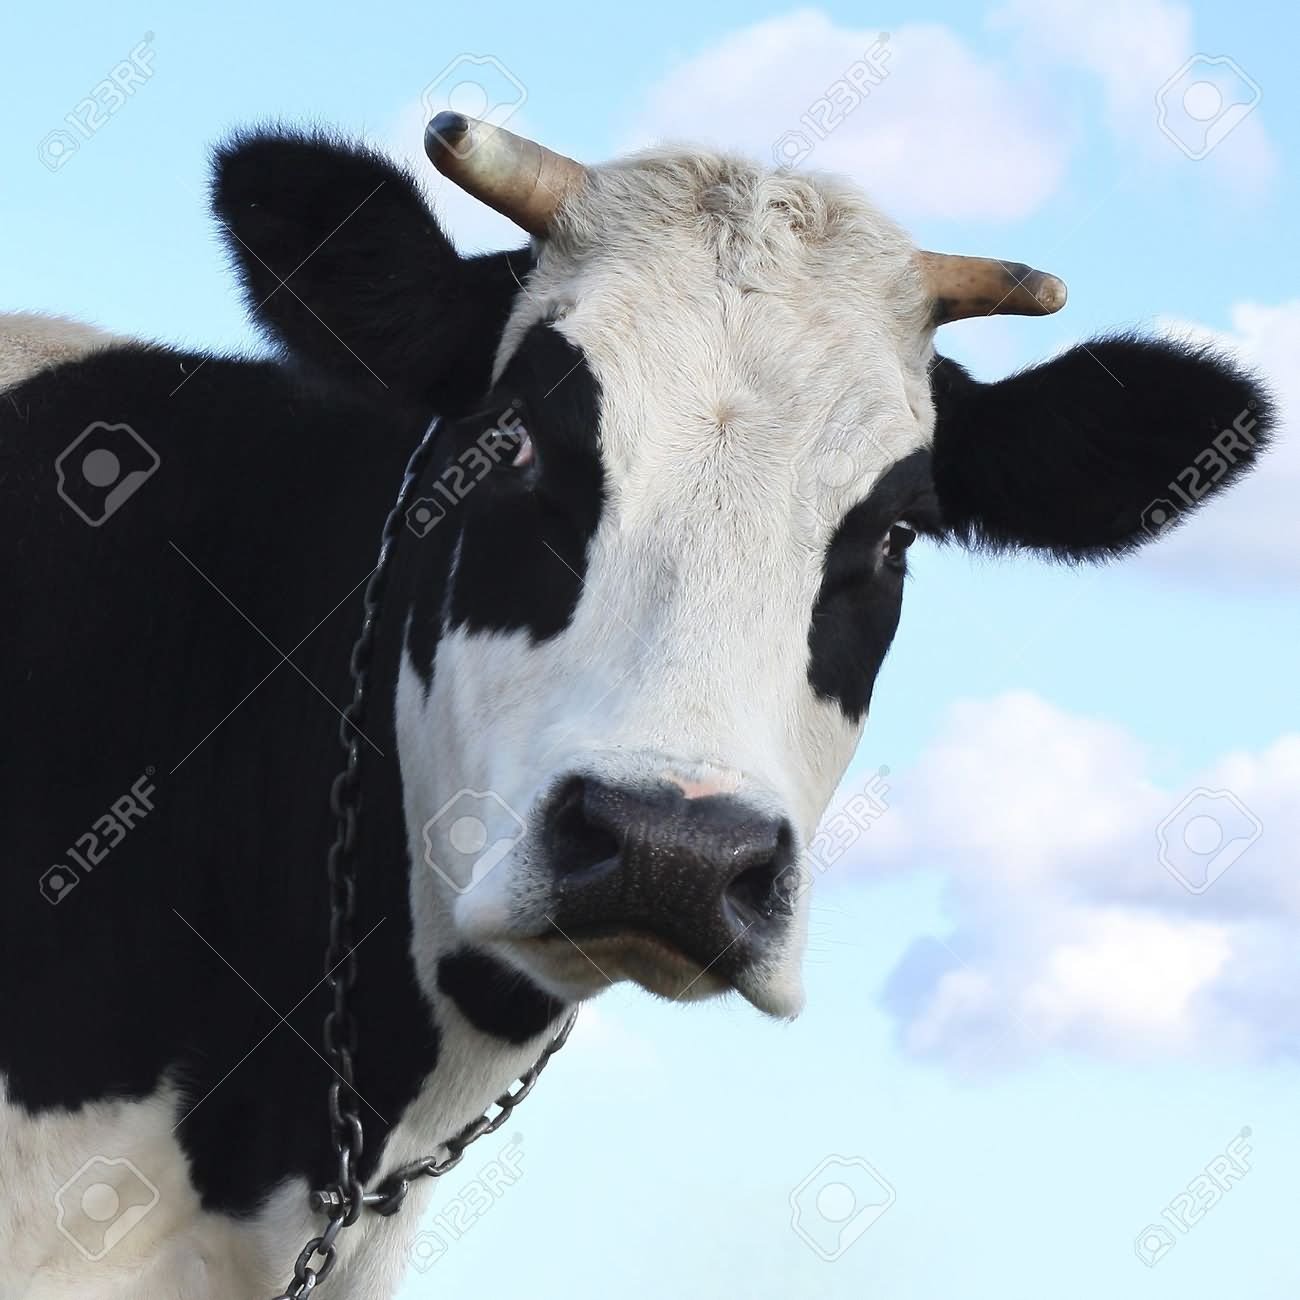 Funny Sad Face Cow Image